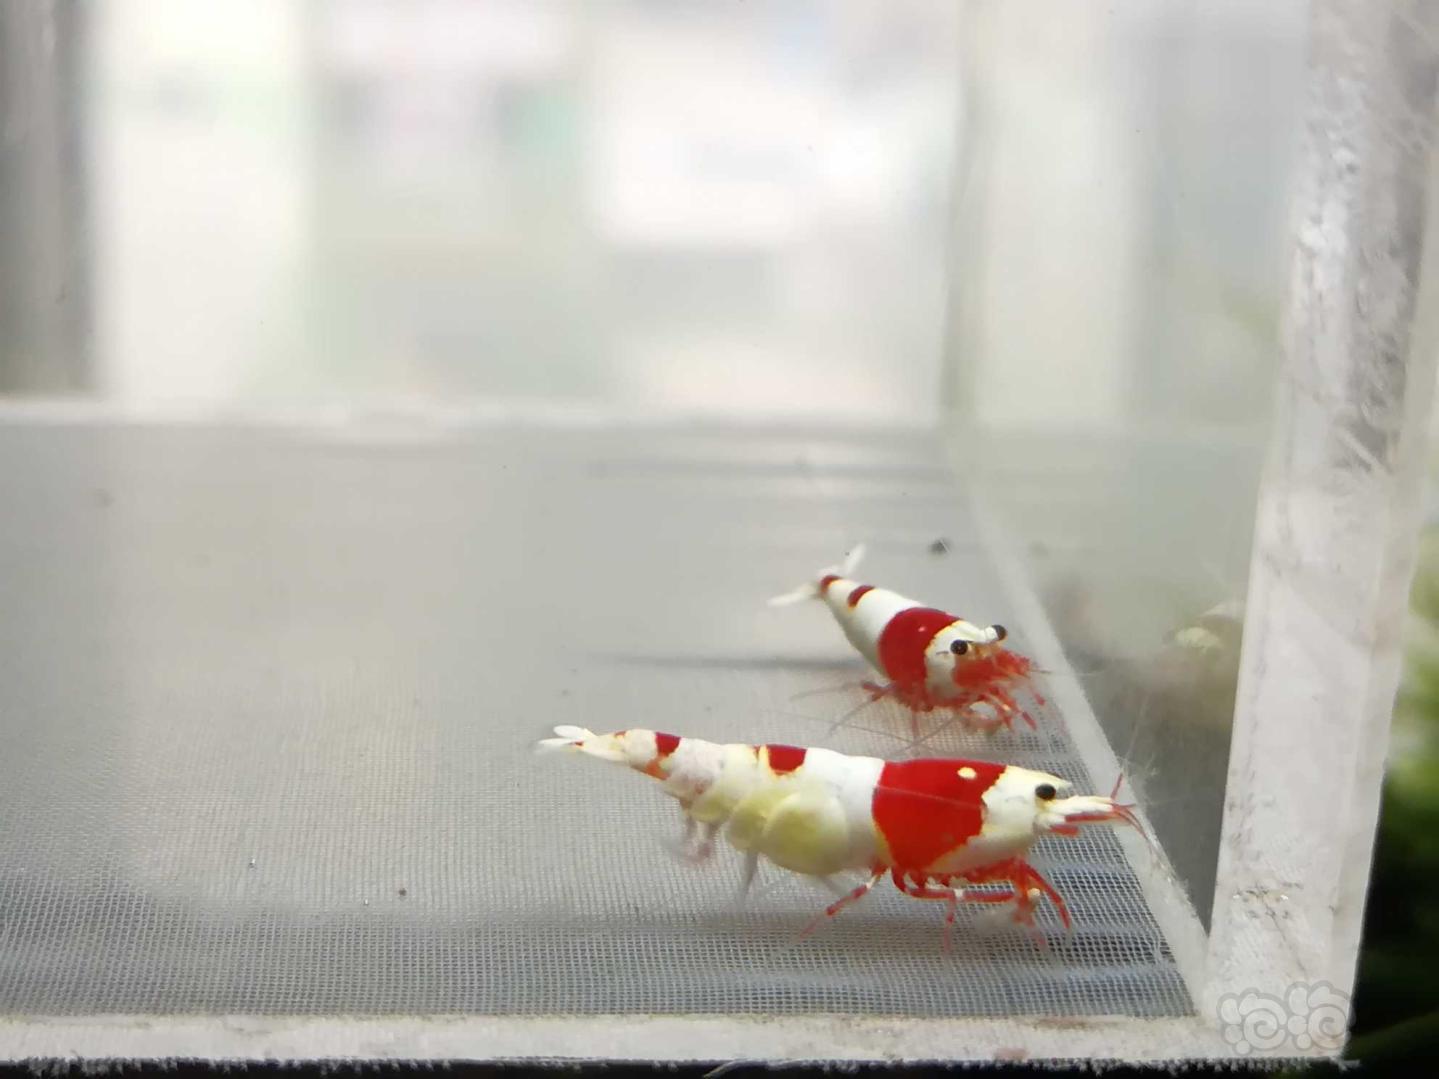 【虾】2020-09-15#RMB拍卖#红白纯血水晶虾一份2只-图8